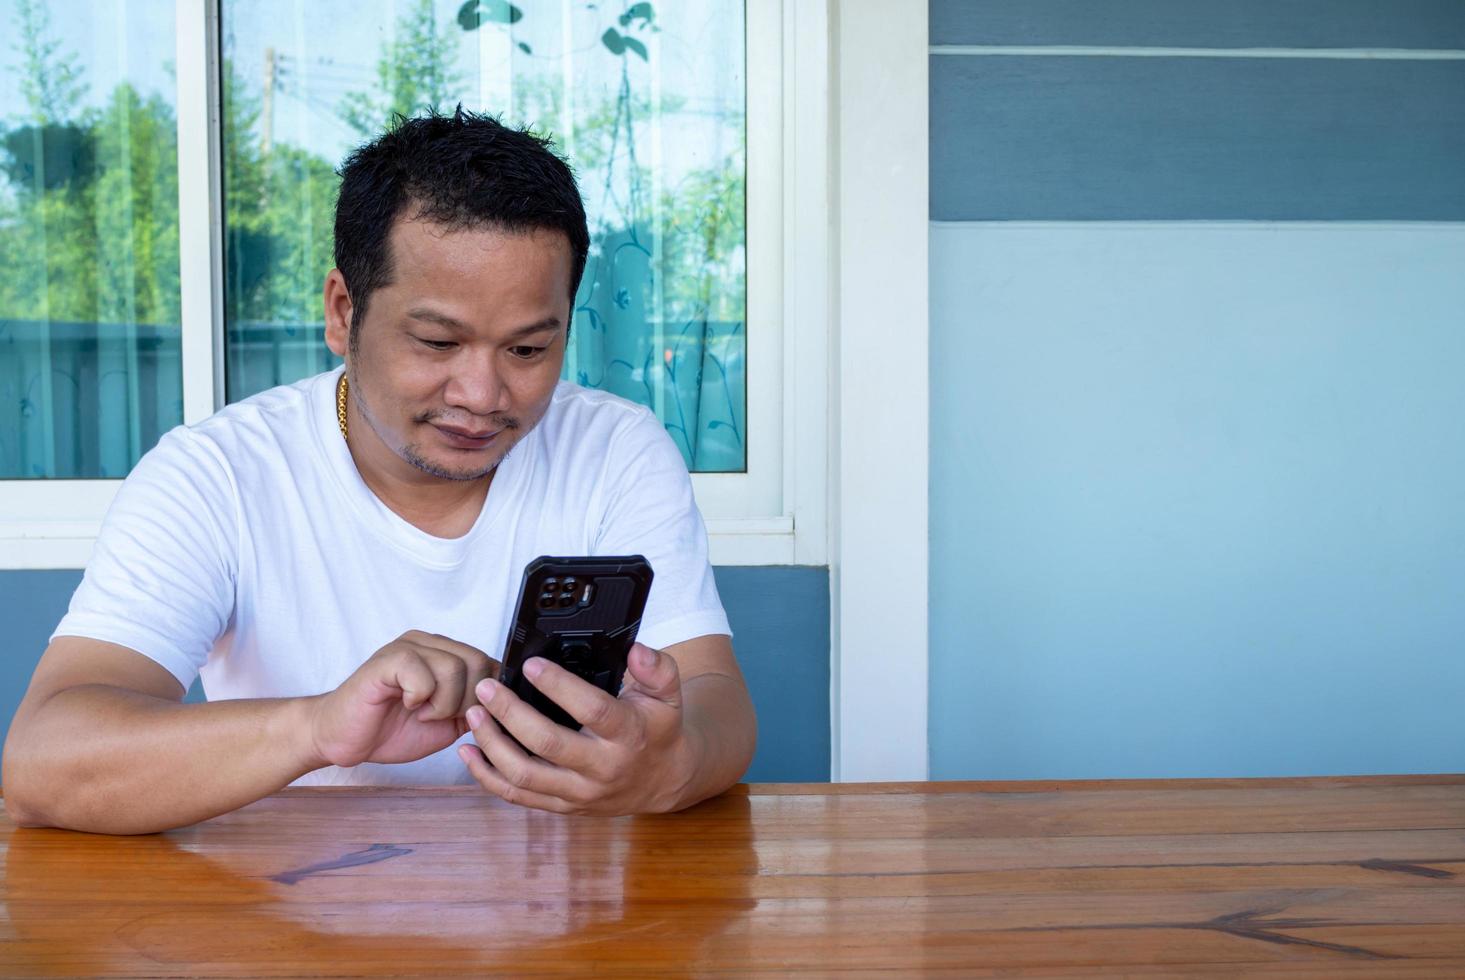 homme asiatique portant une chemise blanche à l'aide du téléphone sur une table en bois photo